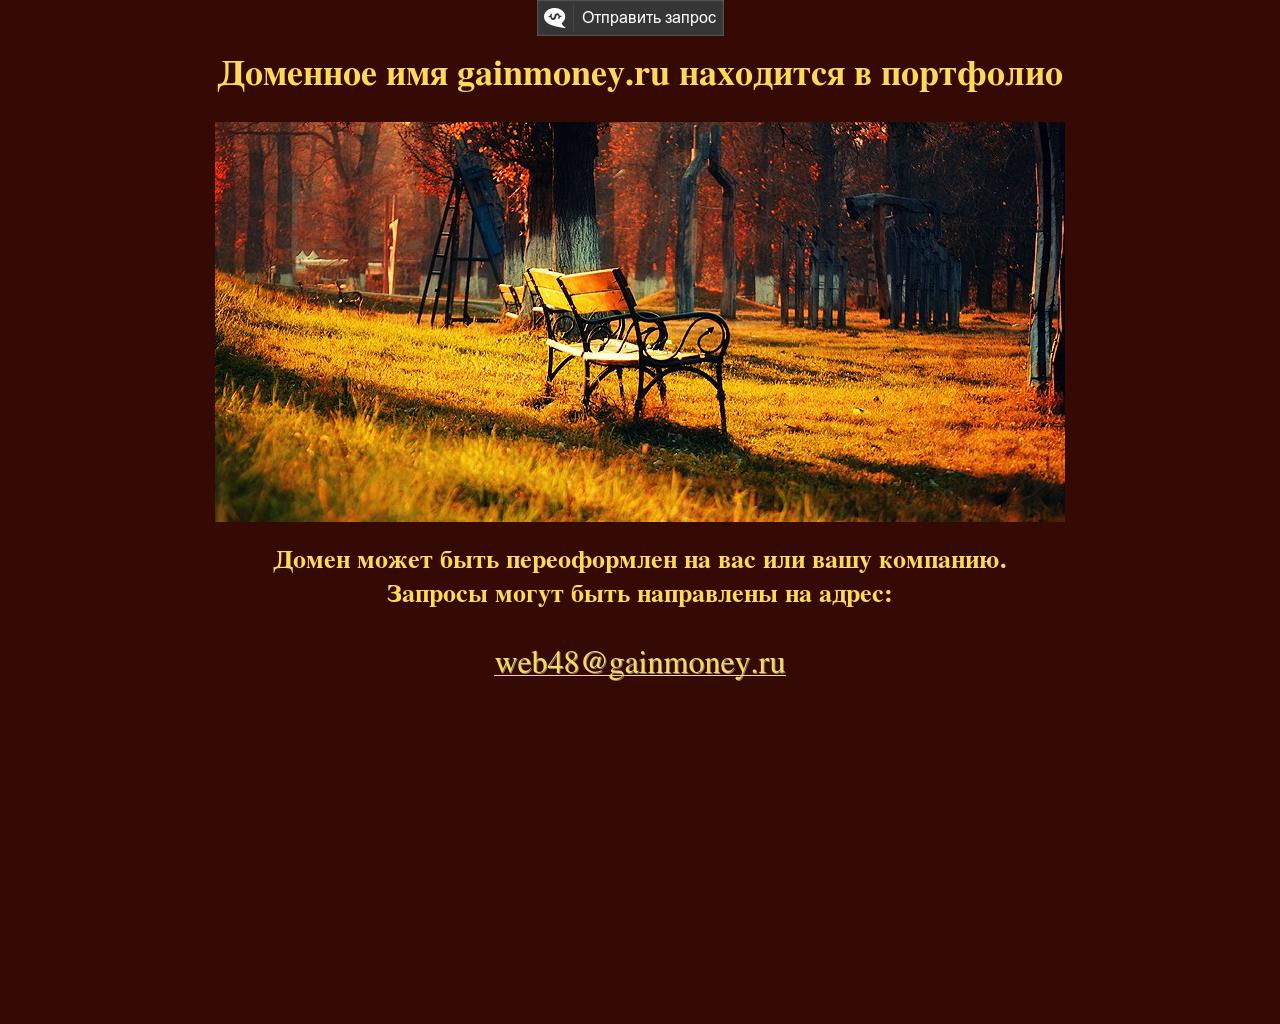 Изображение сайта gainmoney.ru в разрешении 1280x1024